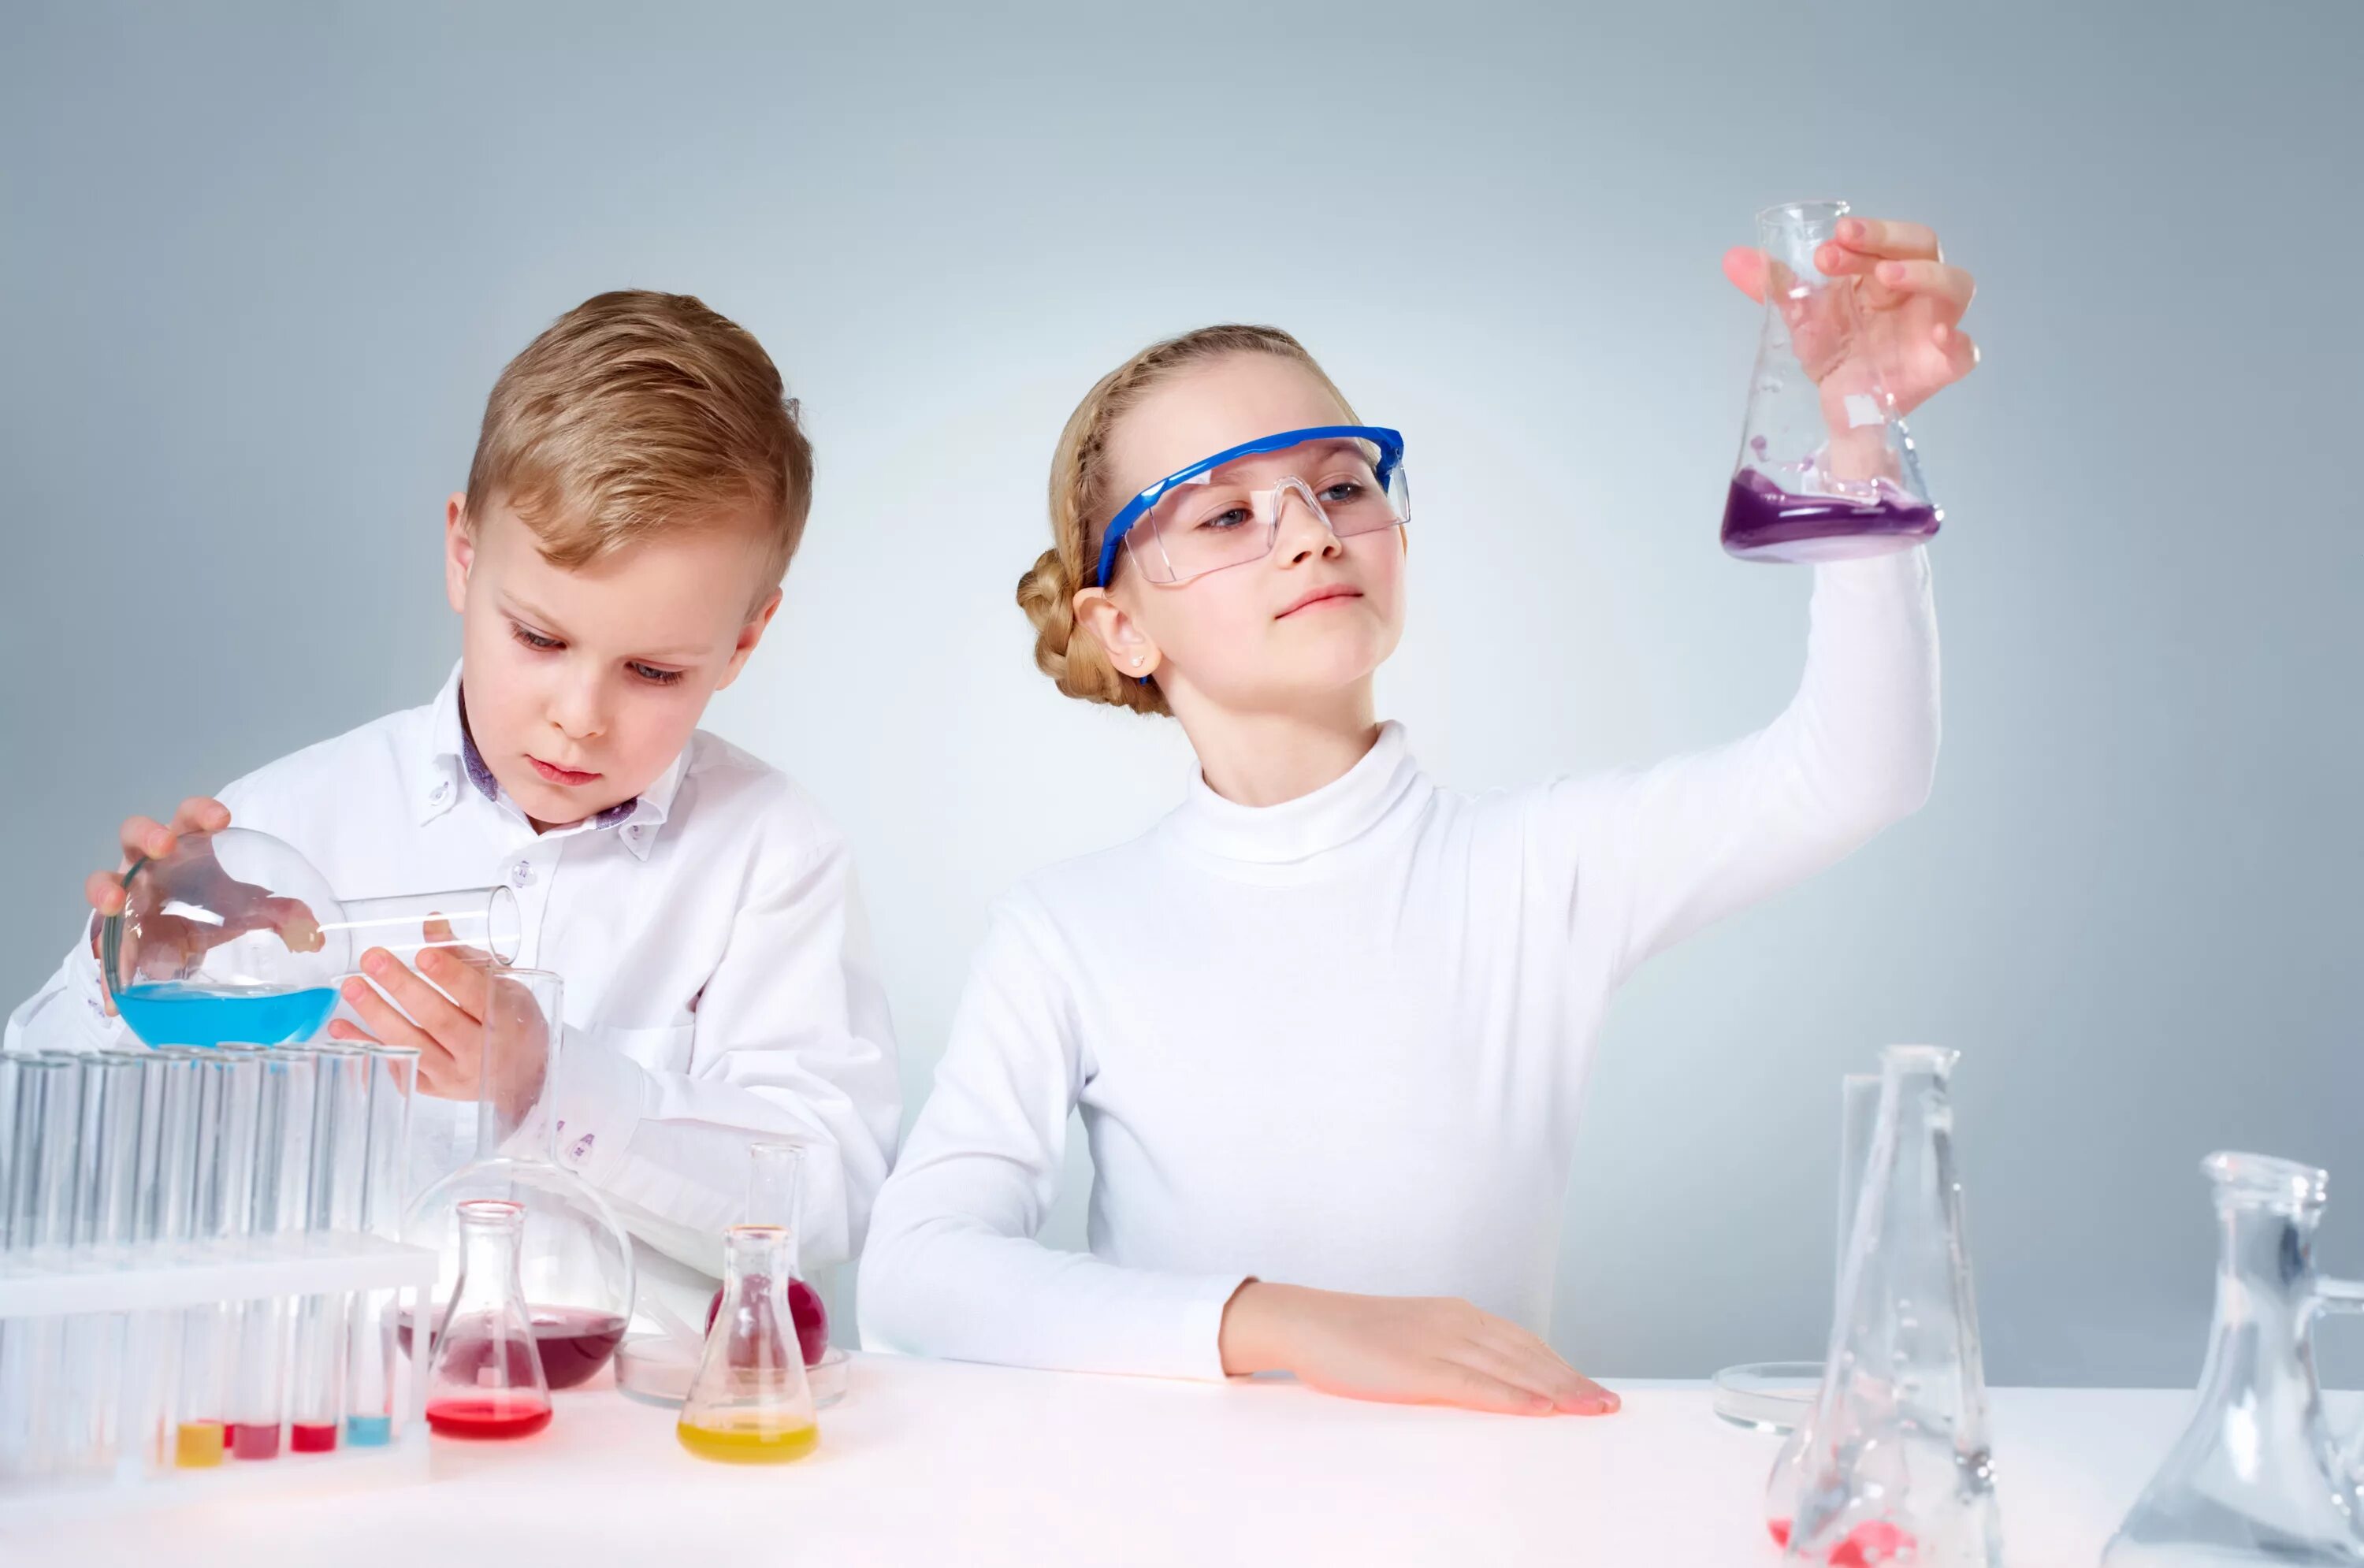 Школа опытов и экспериментов. Химические опыты для детей. Научные опыты для детей. Лаборатория для детей. Детское экспериментирование.